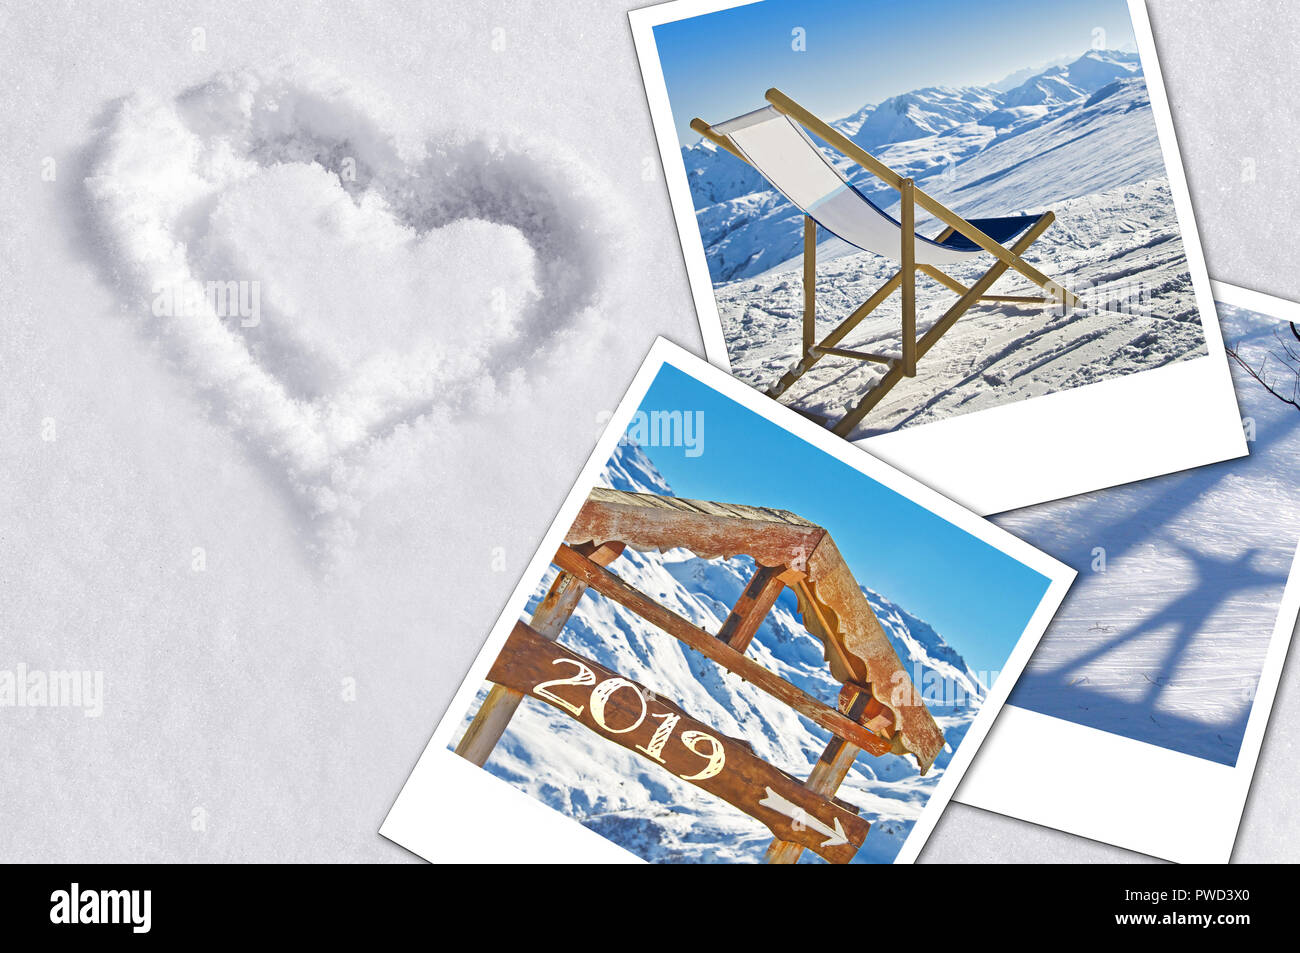 Hiver 2019 instant photos dans la neige Banque D'Images